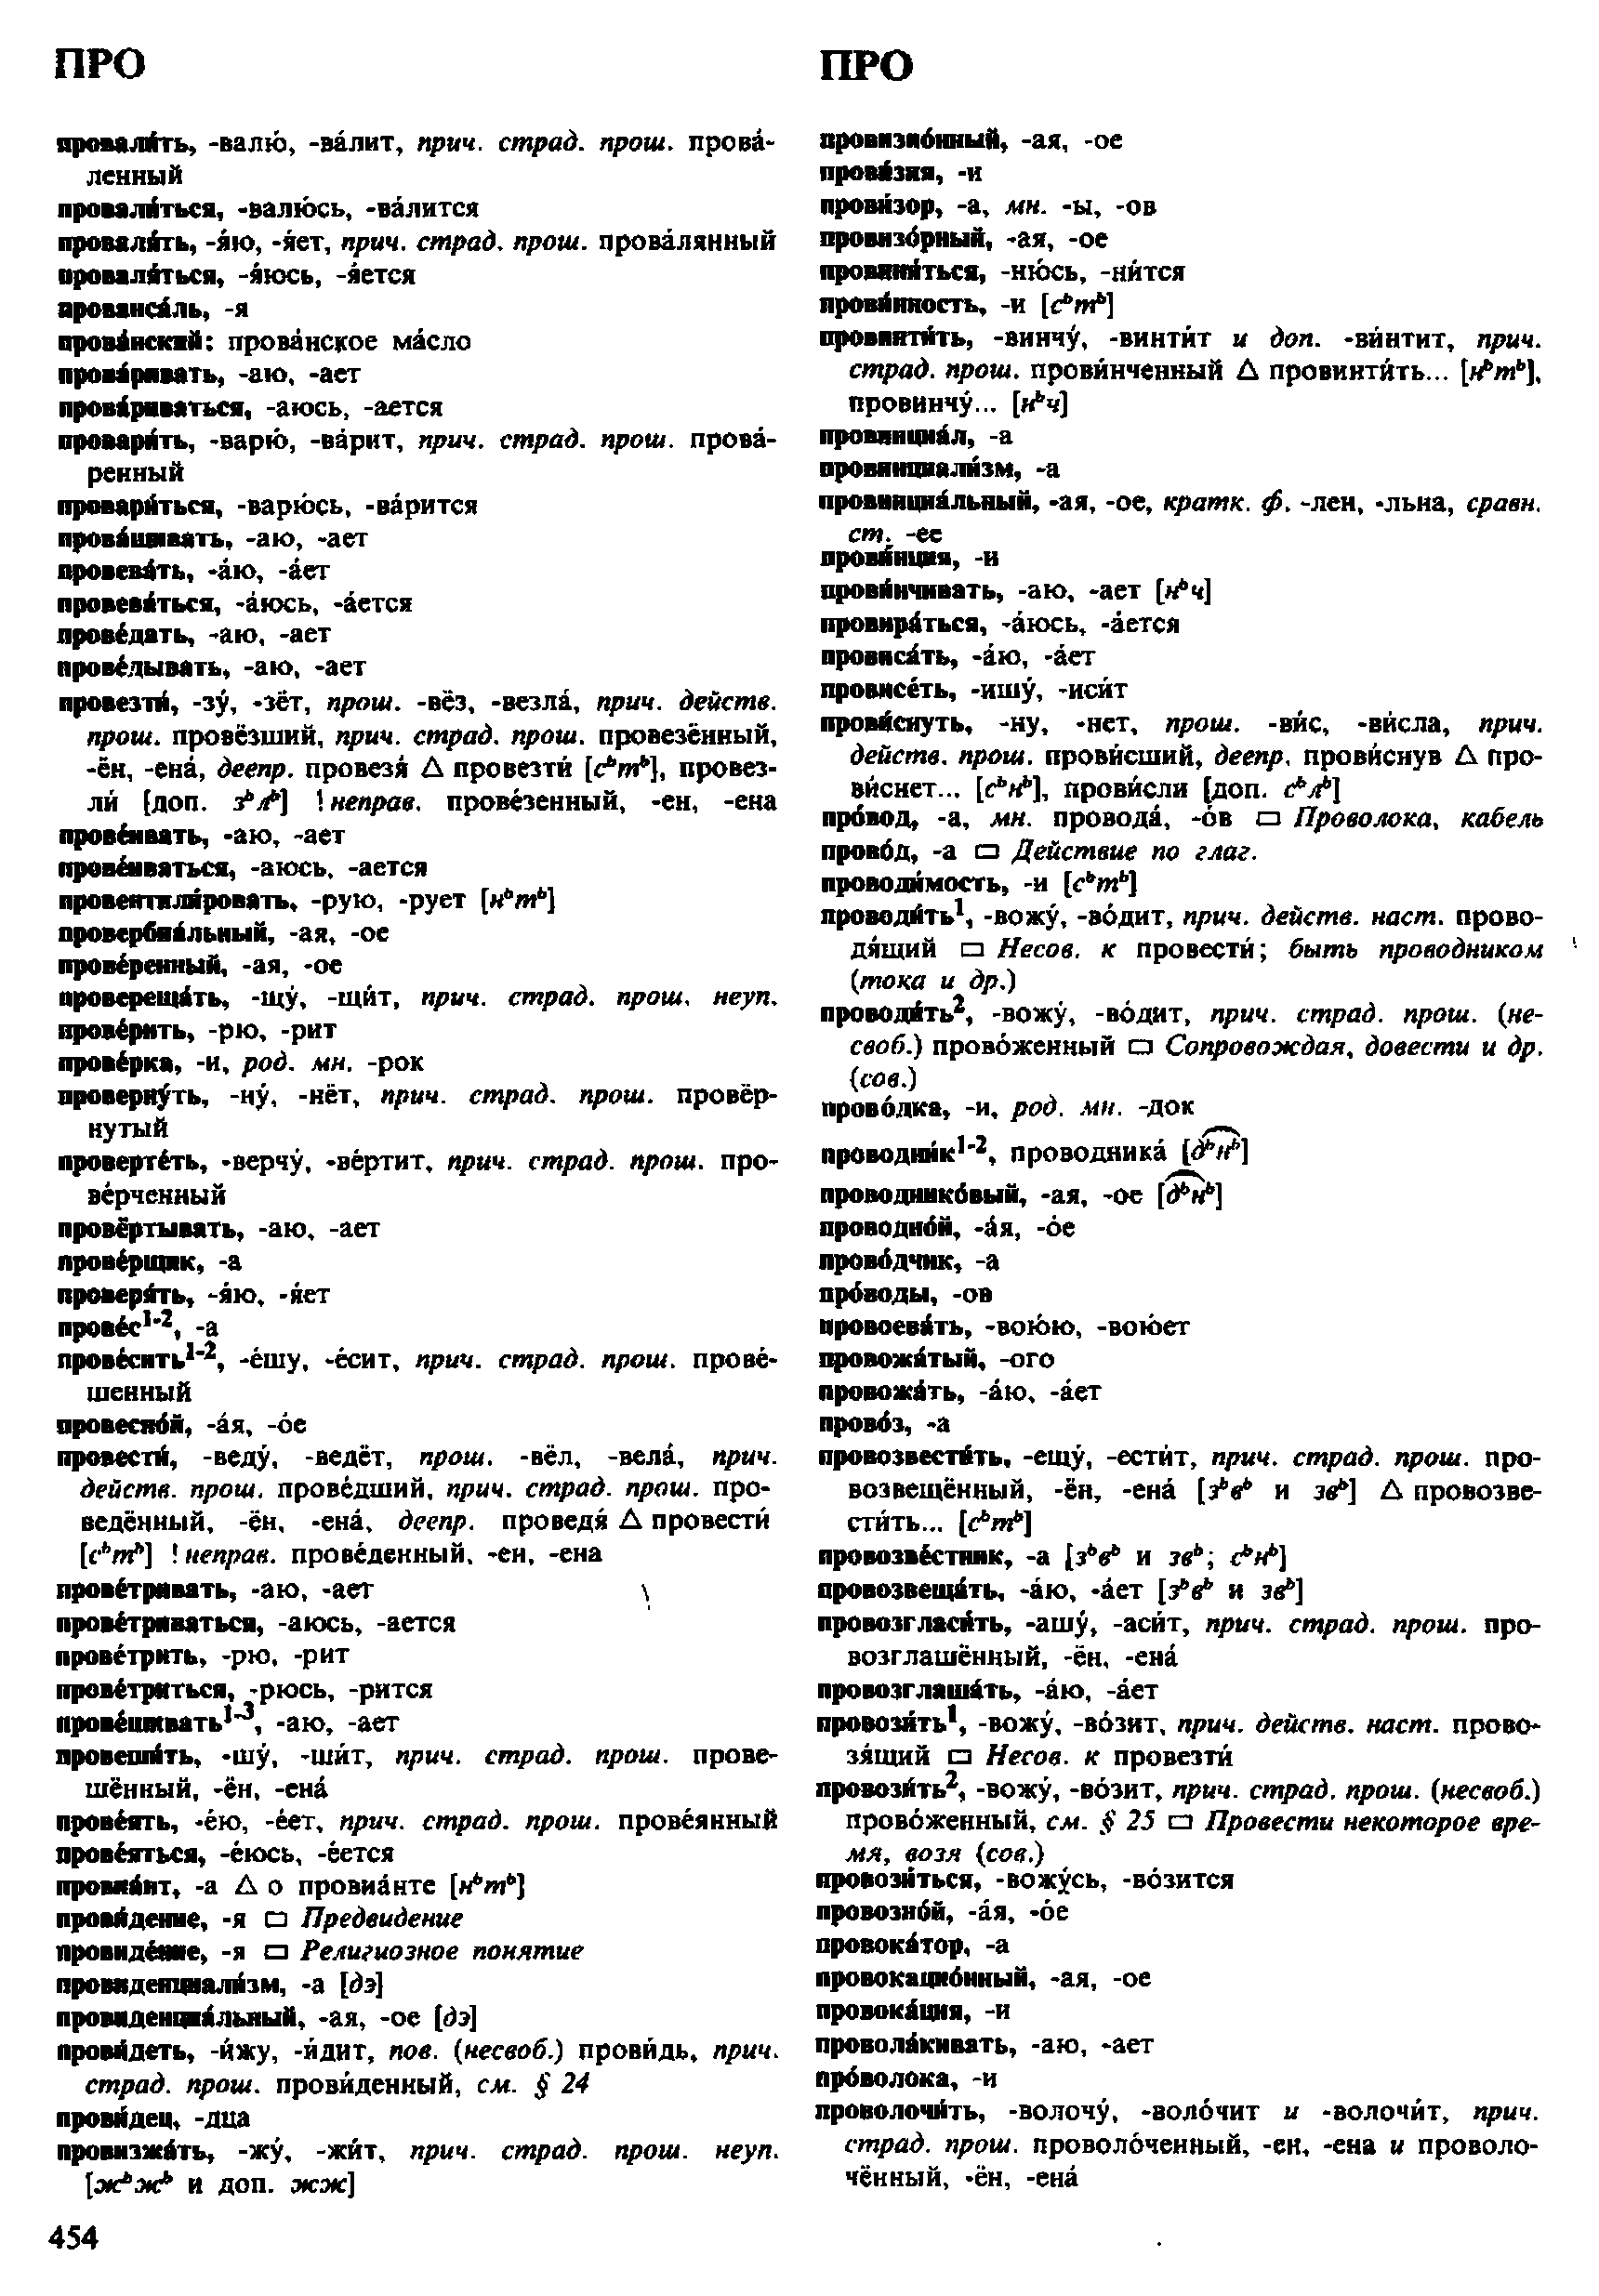 Фотокопия pdf / скан страницы 454 орфоэпического словаря под редакцией Аванесова (4 издание, 1988 год)